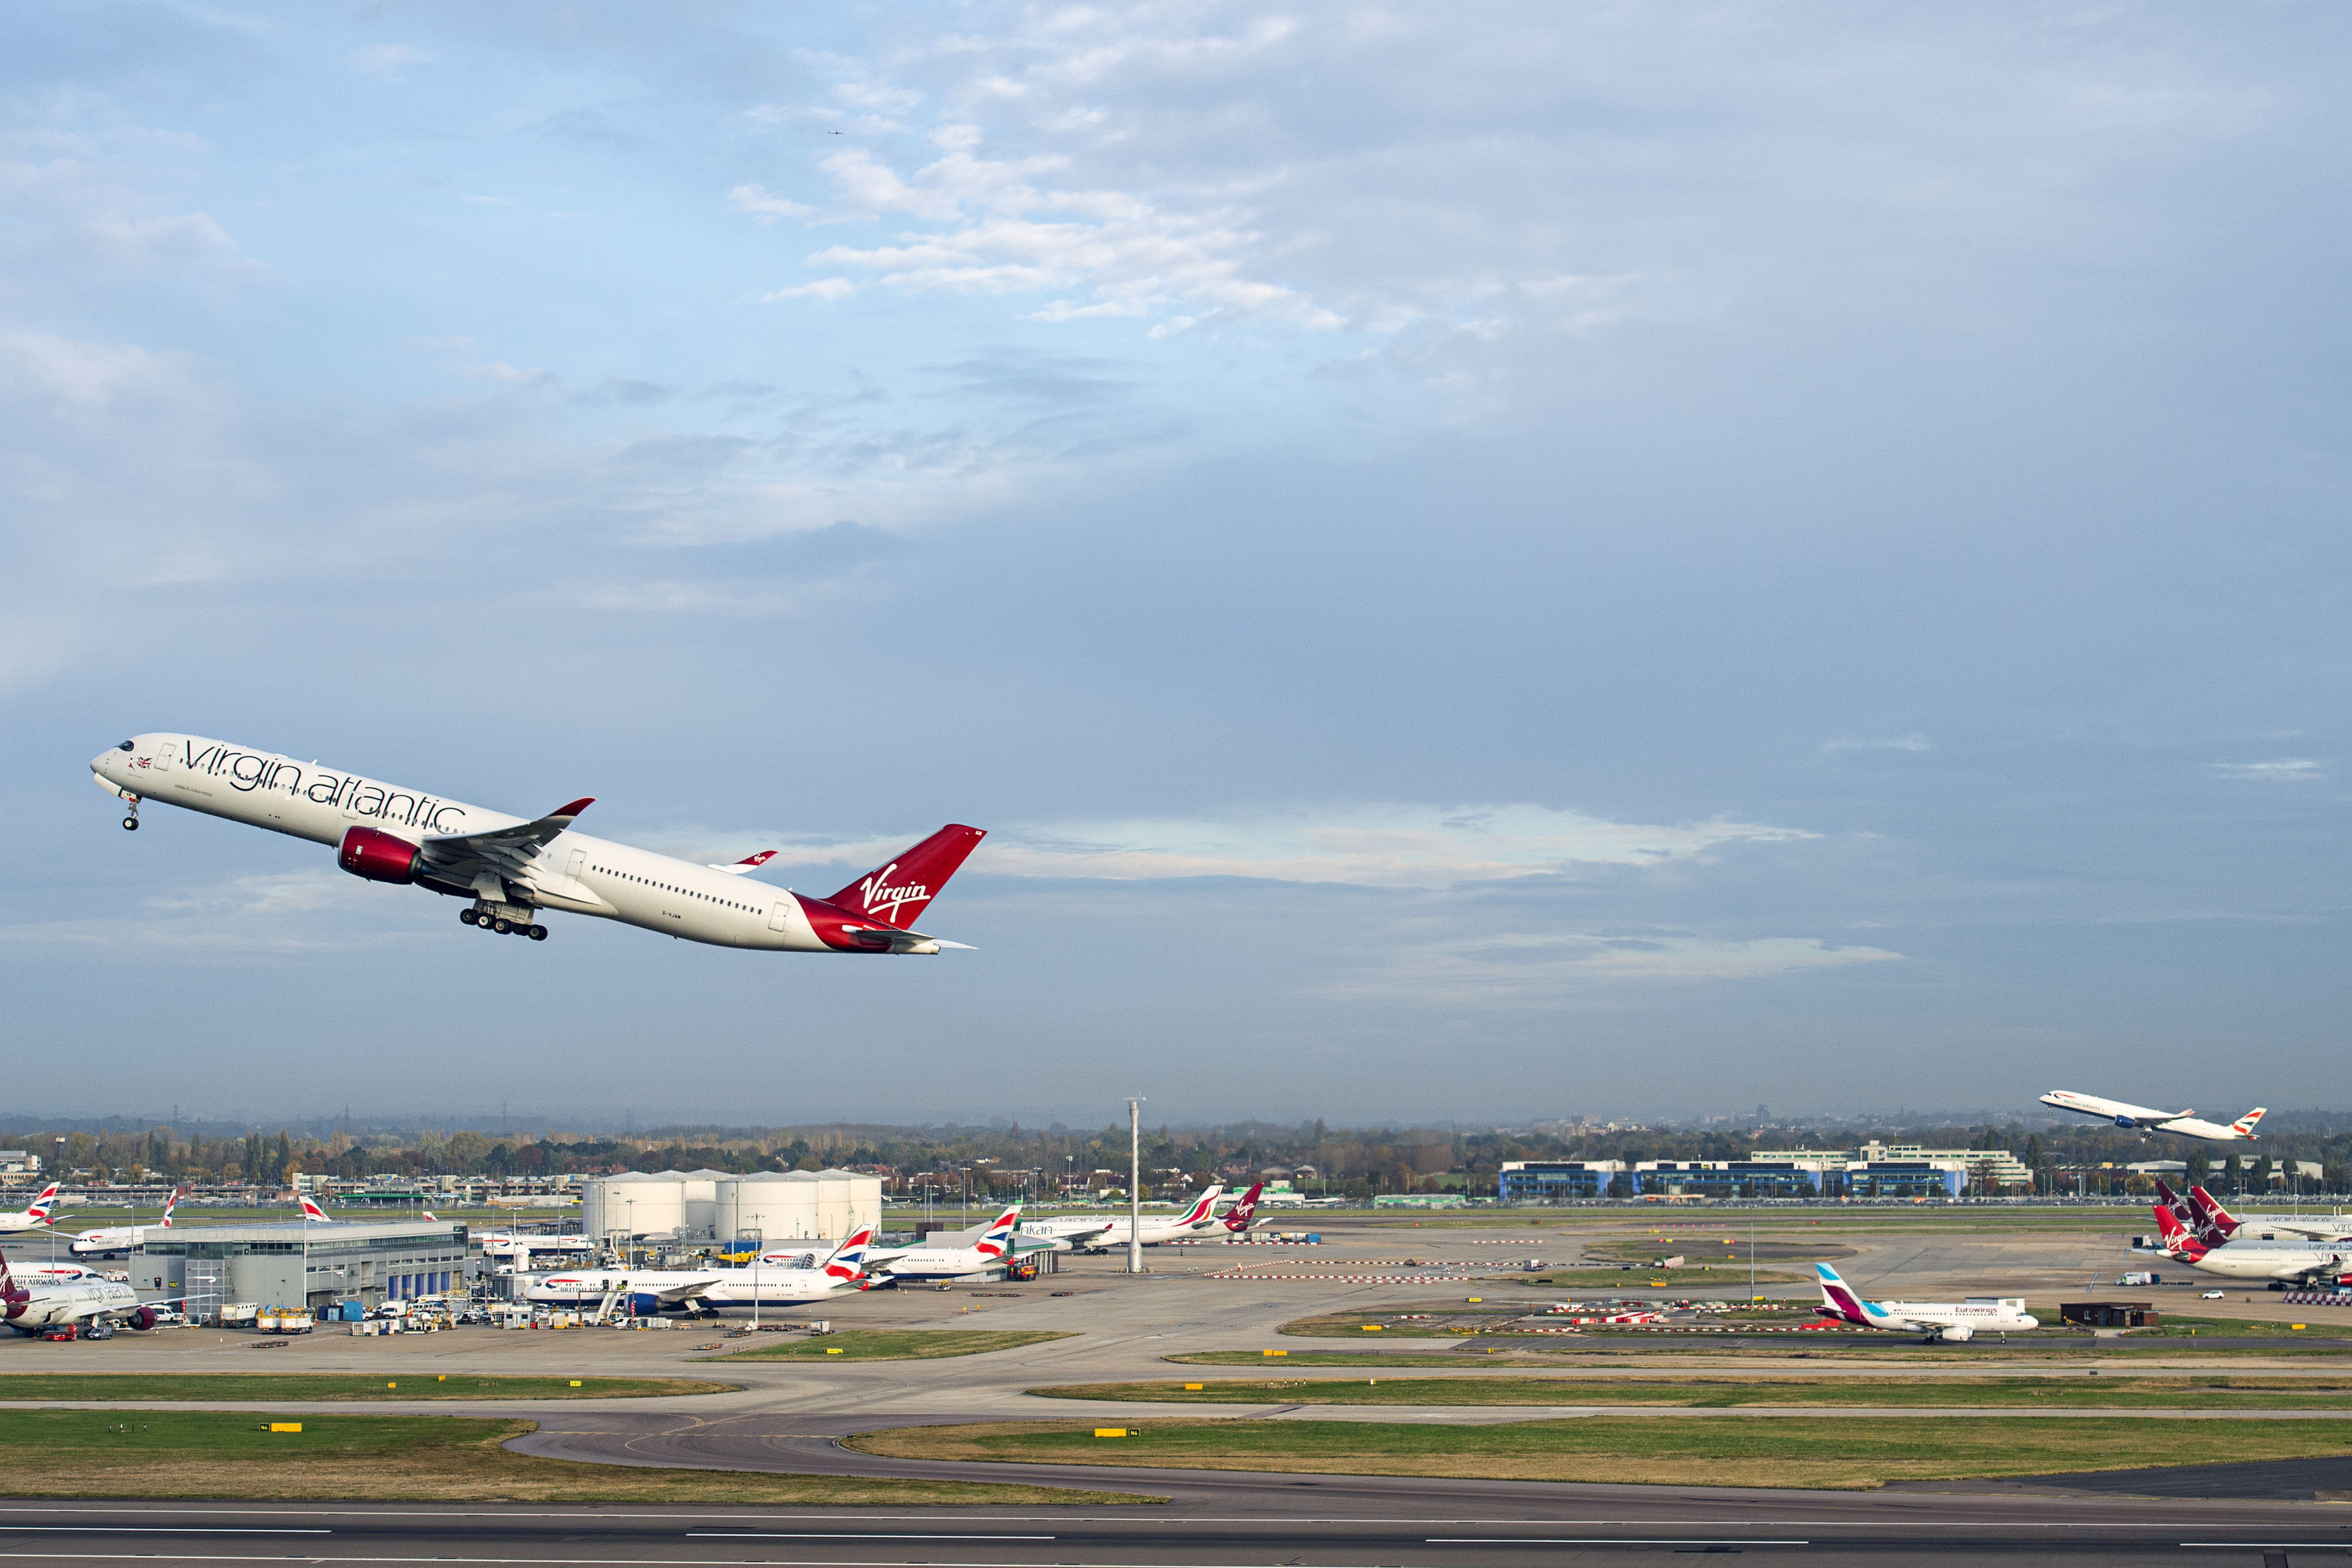 El vuelo VS3 de Virgin Atlantic, delantero, y el vuelo BA001 de British Airways realizan una salida sincronizada en pistas paralelas en el Aeropuerto Heathrow de Londres, el lunes 8 de noviembre de 2021 rumbo al aeropuerto JFK de Nueva York para celebrar la reapertura del corredor de viajes transatlántico. (Anthony Upton/PA via AP)